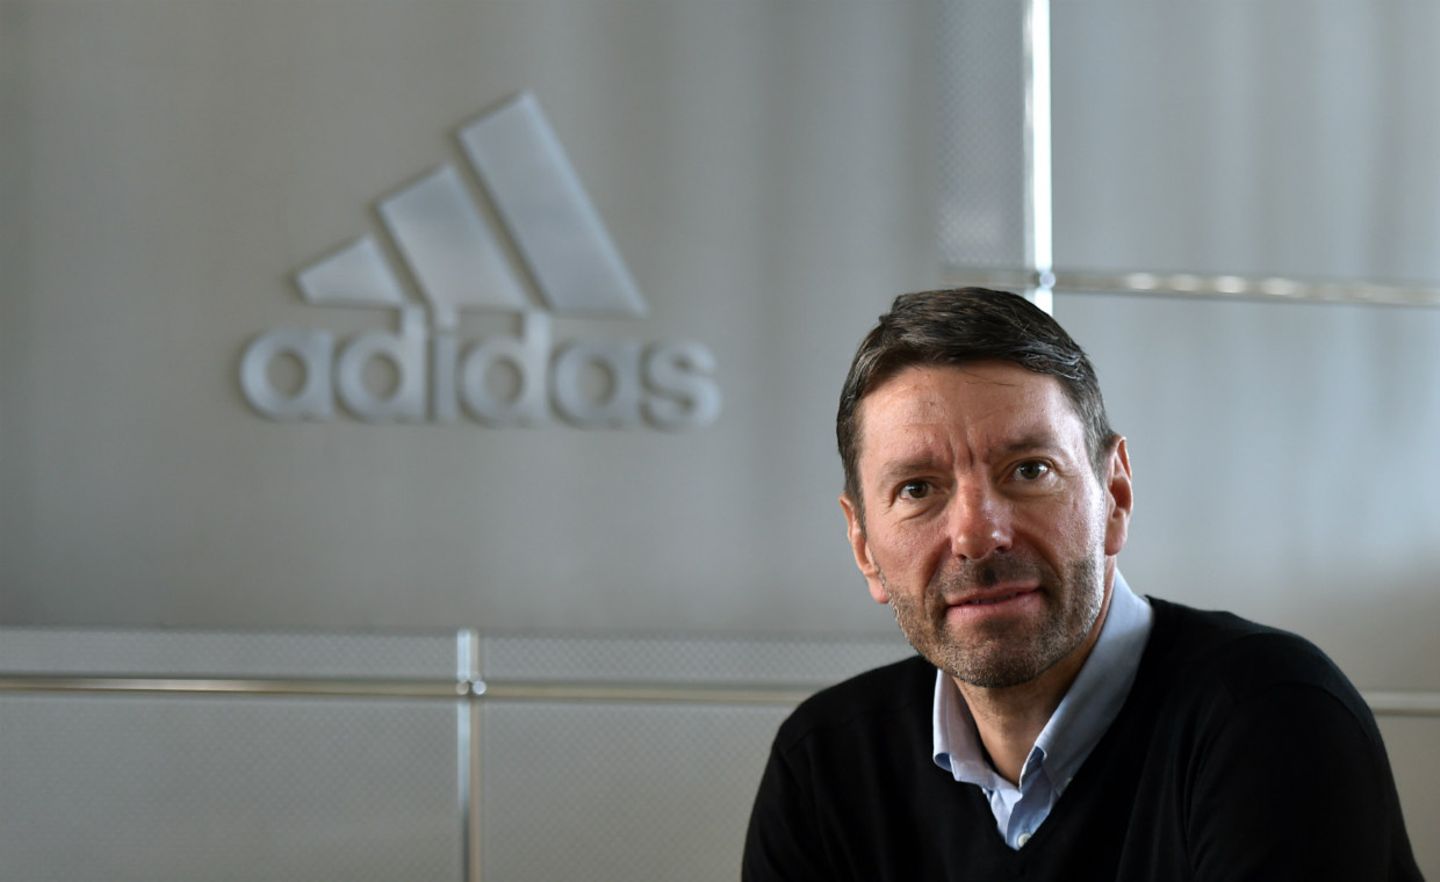 Der jetzige Adidas-Chef blickt auf berufliche Stationen bei Oracle, Compaq und Hewlett-Packard zurück.